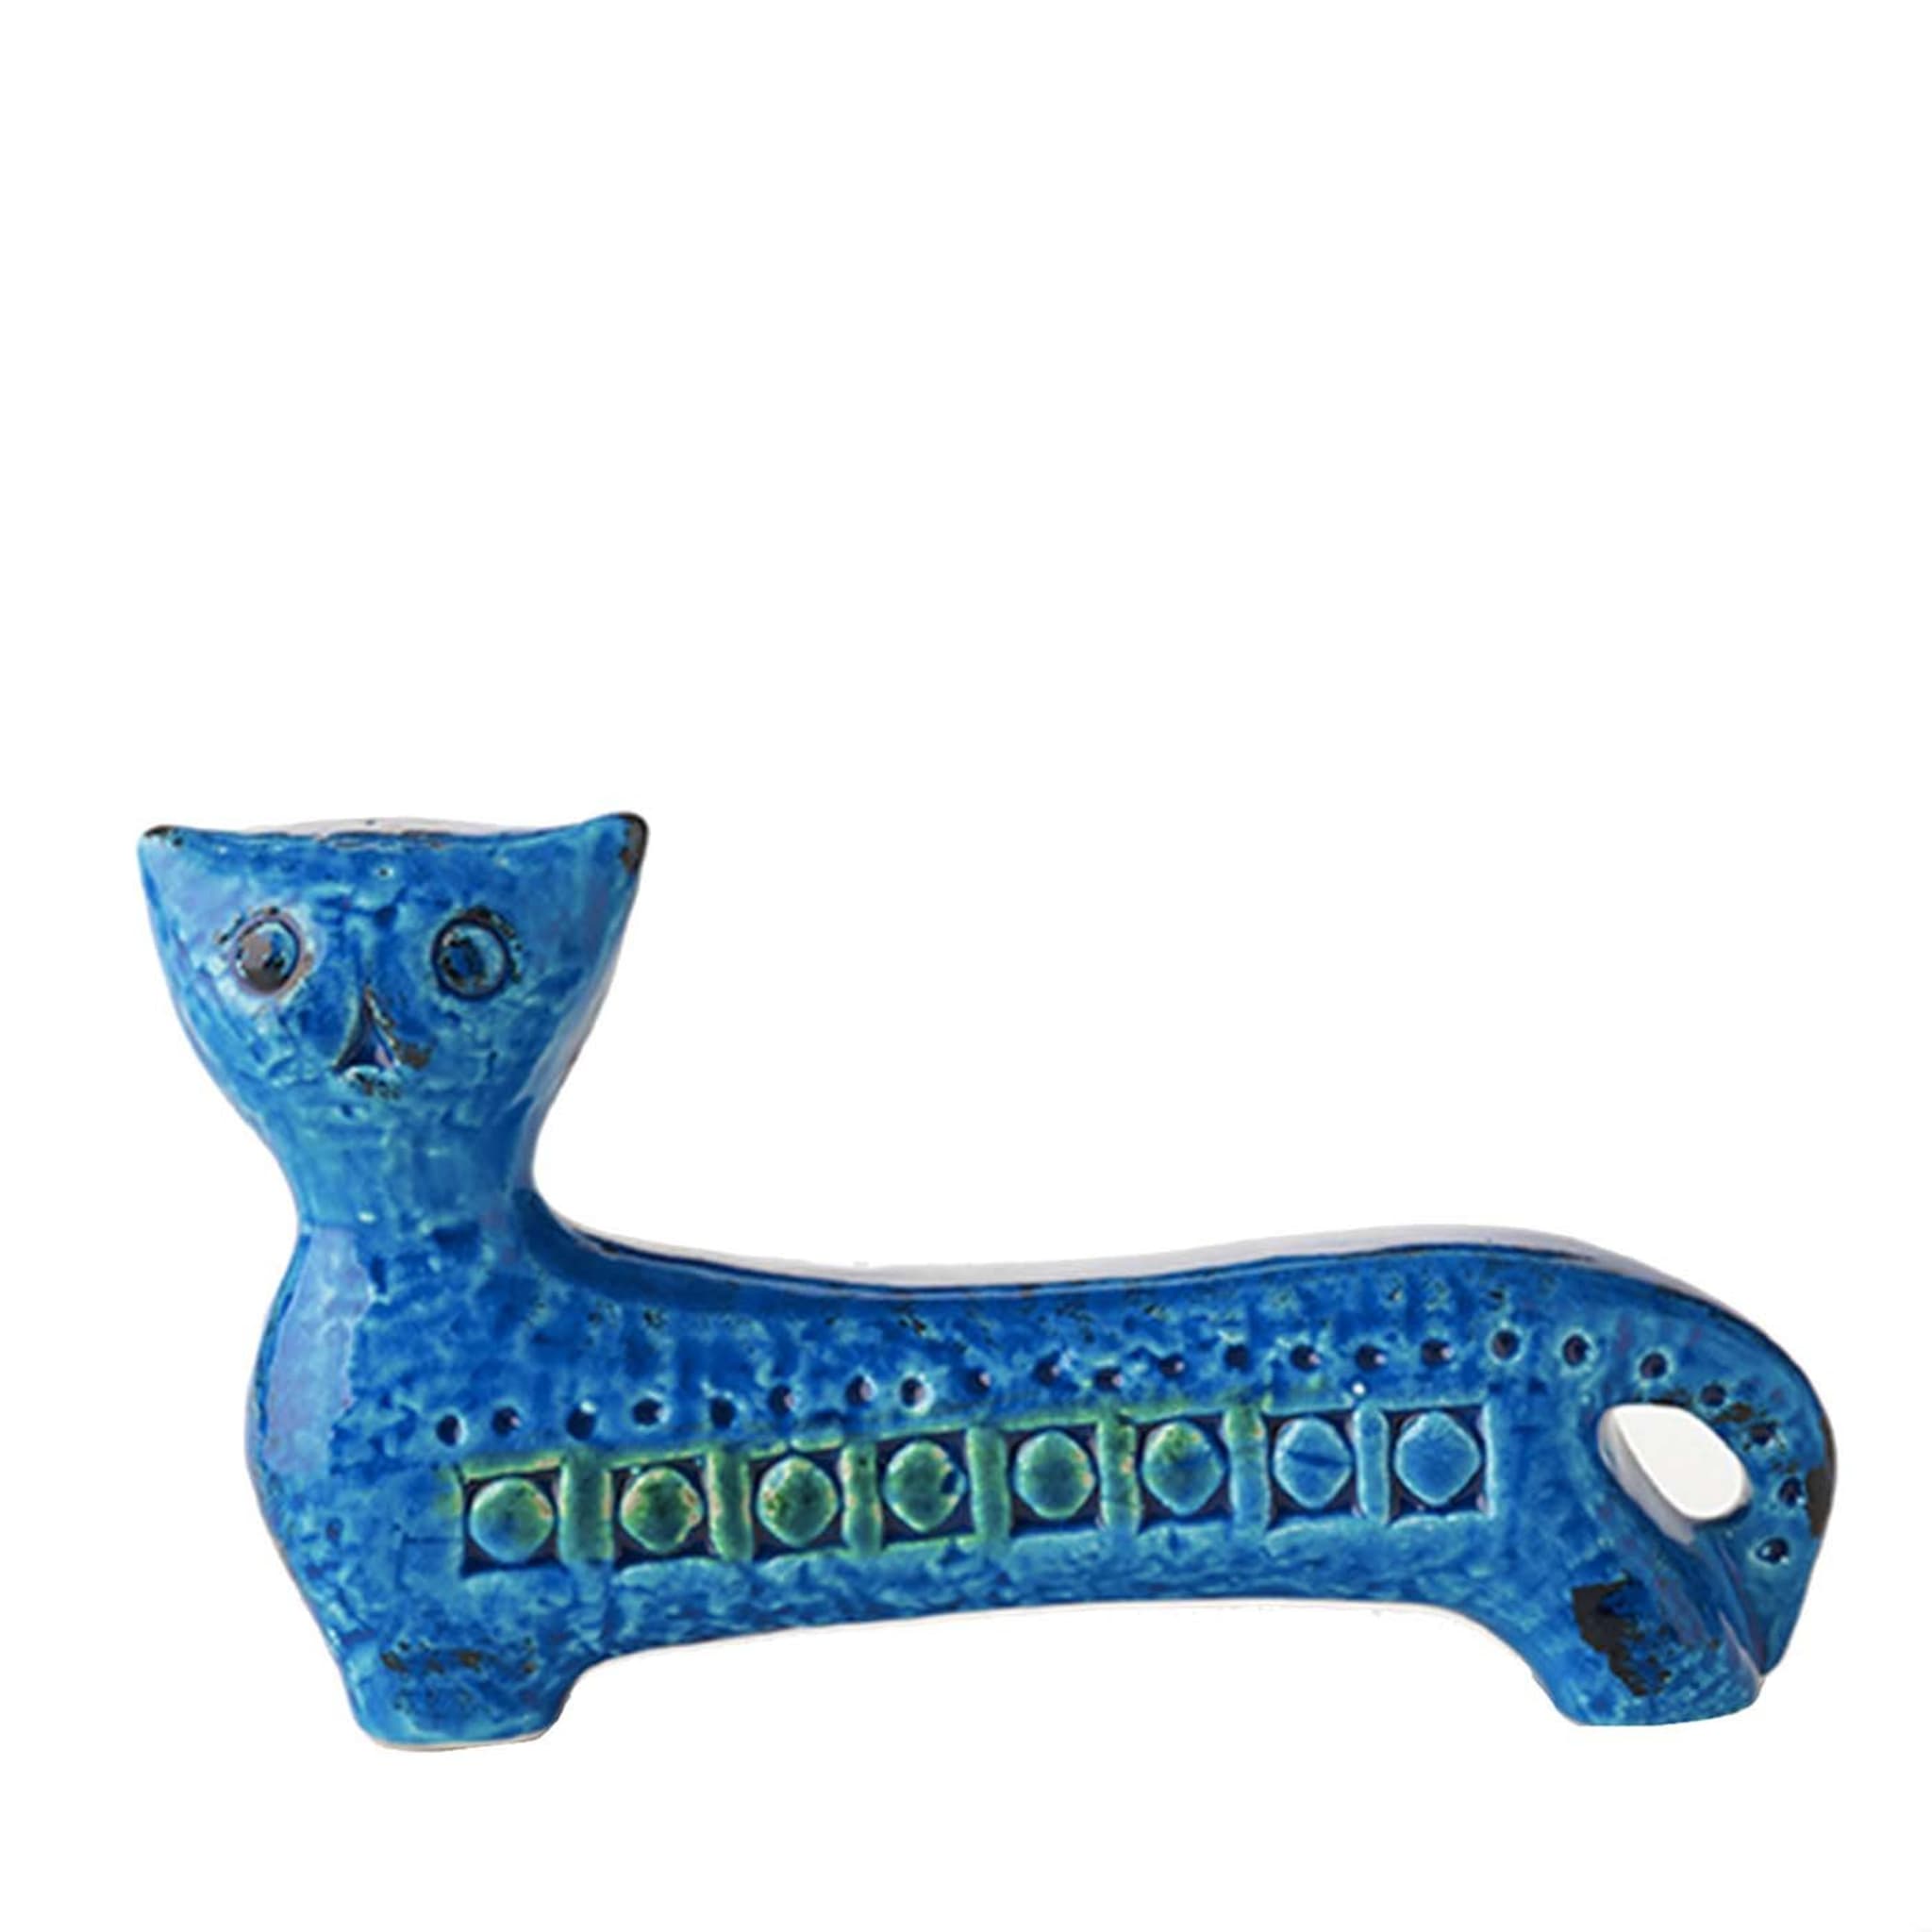 Rimini Blu Long Cat Figurine by Aldo Londi - Vue principale